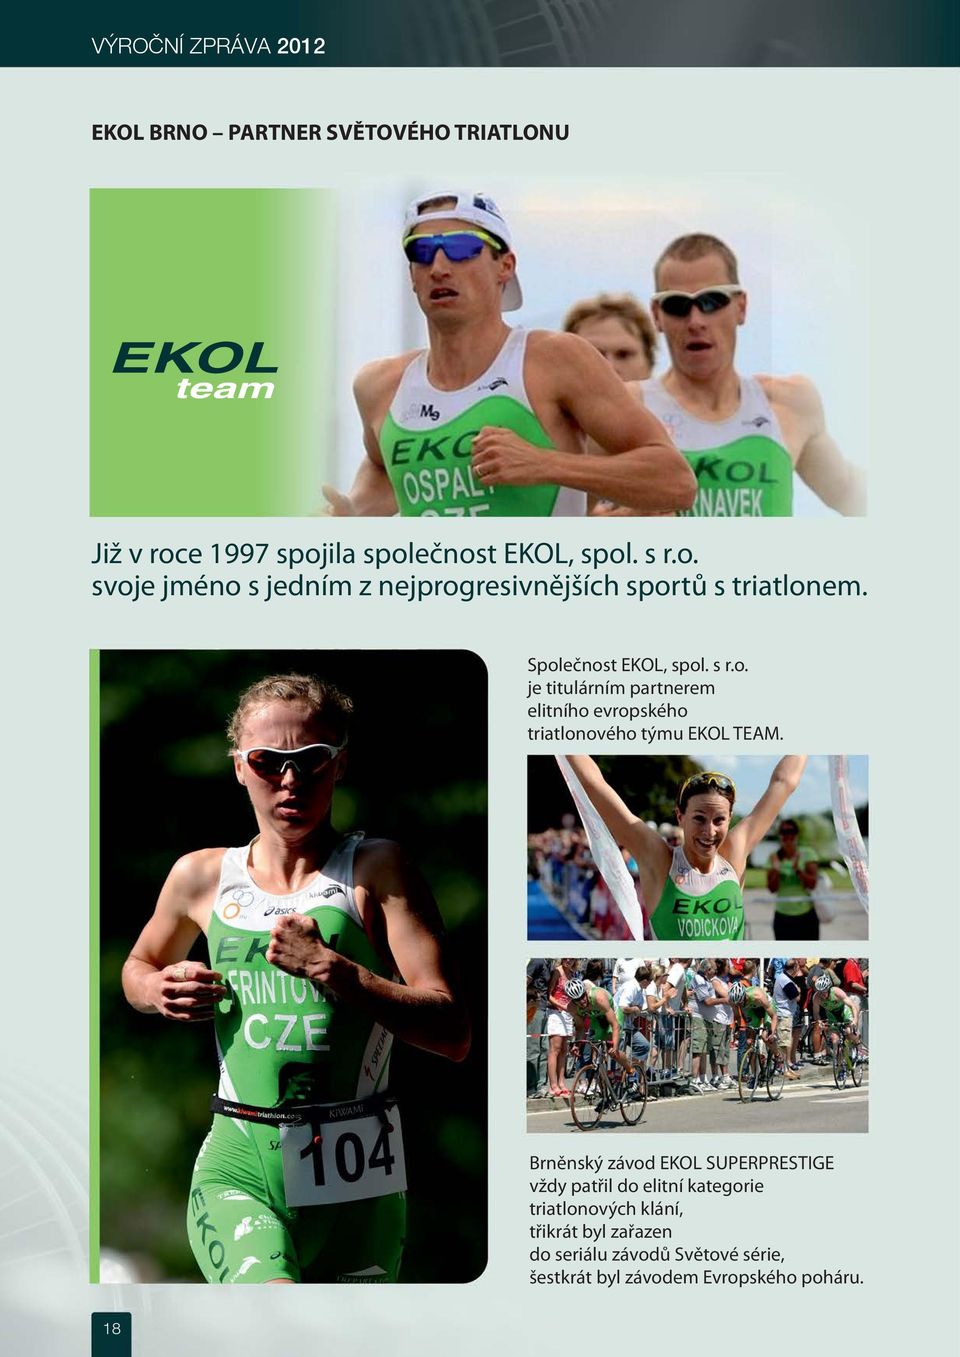 Společnost EKOL, spol. s r.o. je titulárním partnerem elitního evropského triatlonového týmu EKOL TEAM.